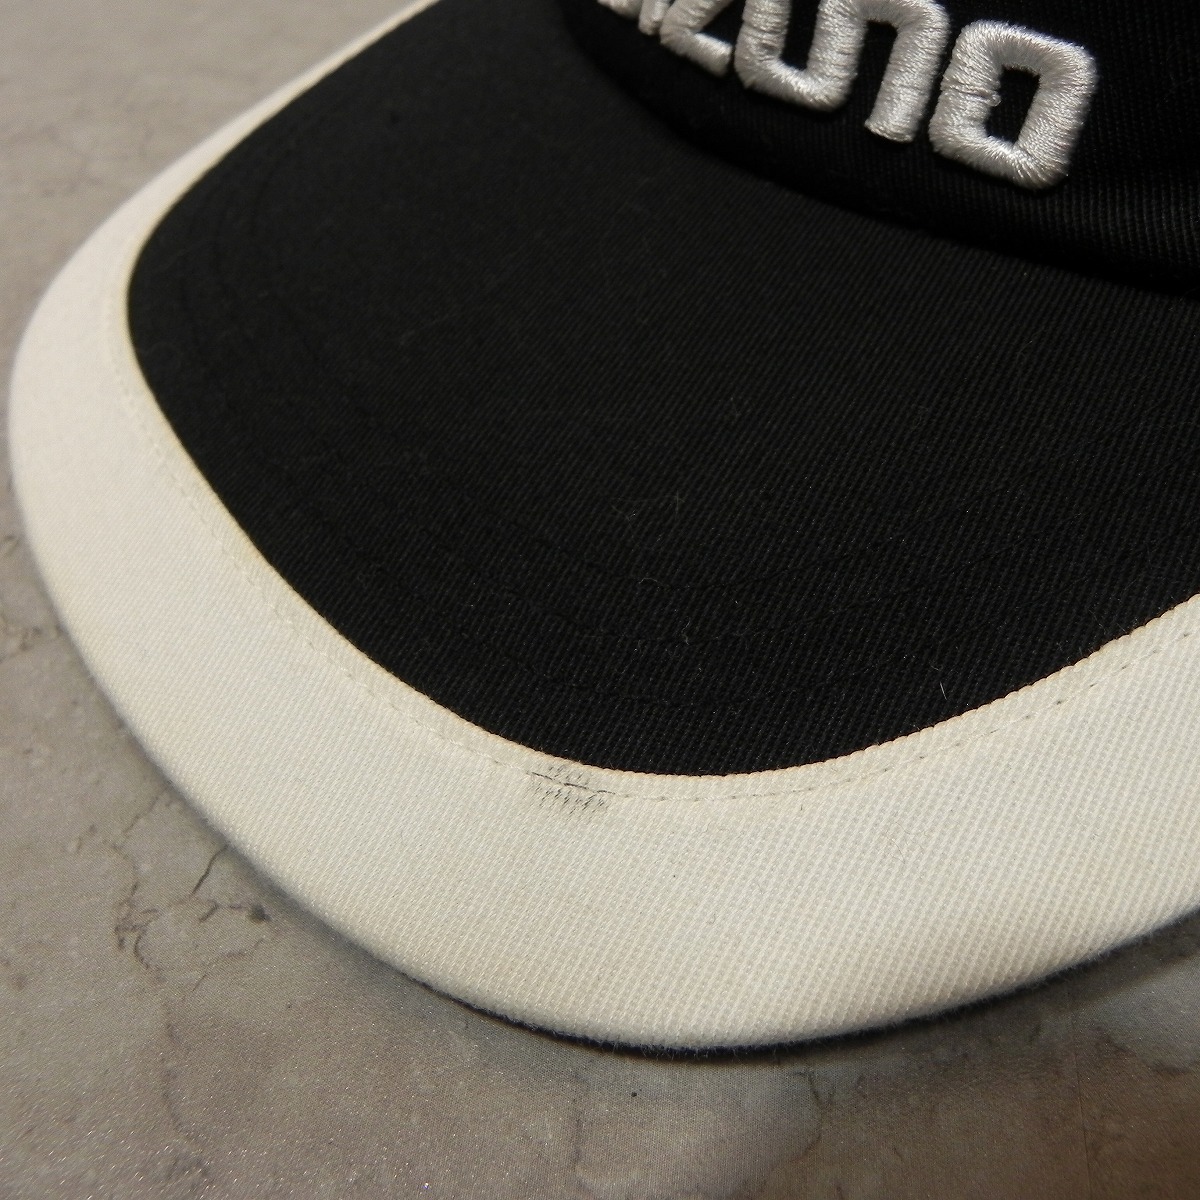  Mizuno black black Golf cap hat Logo embroidery brand MIZUNO MP used FREE *h